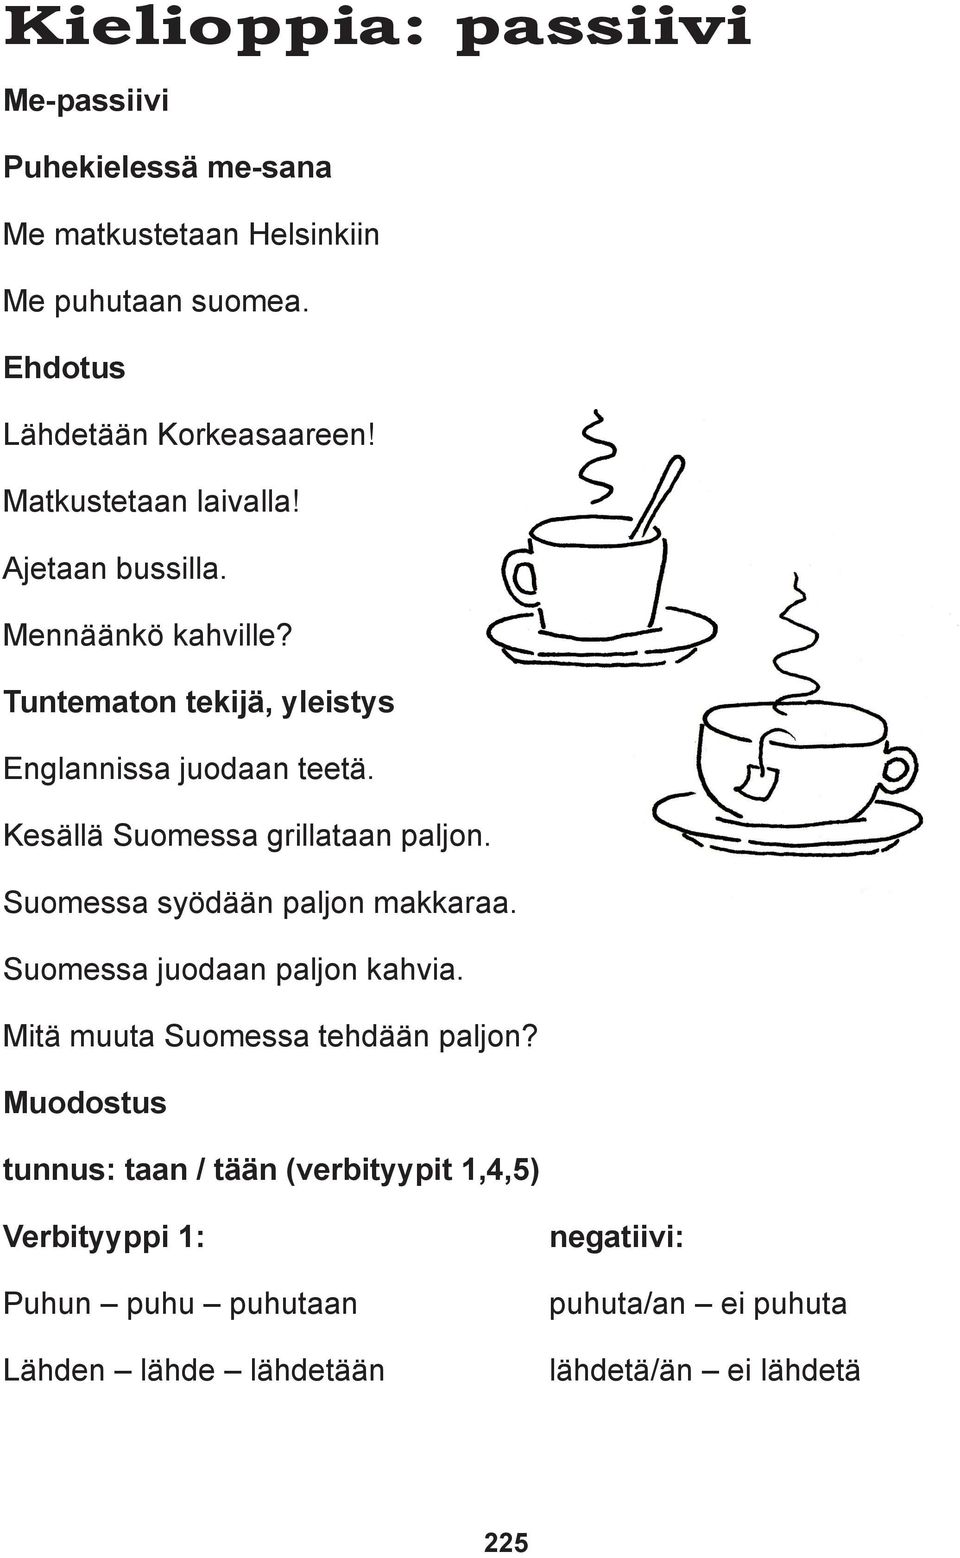 Kesällä Suomessa grillataan paljon. Suomessa syödään paljon makkaraa. Suomessa juodaan paljon kahvia. Mitä muuta Suomessa tehdään paljon?